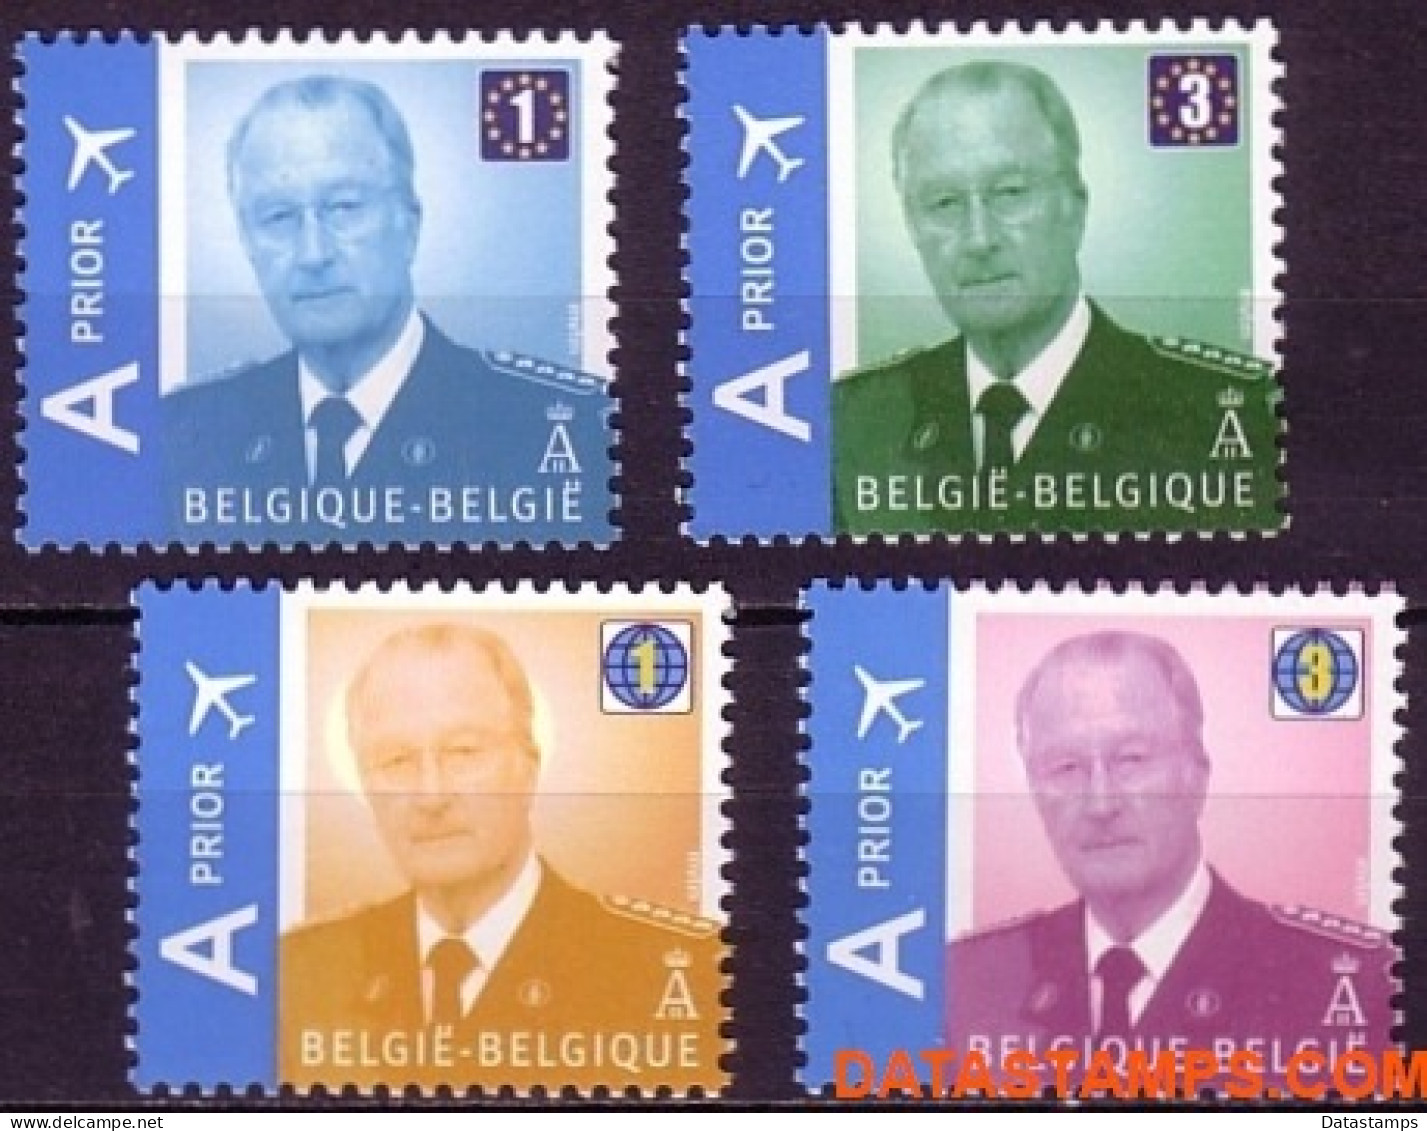 België 2009 - Mi:3913/3916, Yv:3848/3851, OBP:3867/3870, Stamp - XX - King Albert II Mvtm - Nieuw Frankeringssysteem - 1993-2013 Koning Albert II (MVTM)